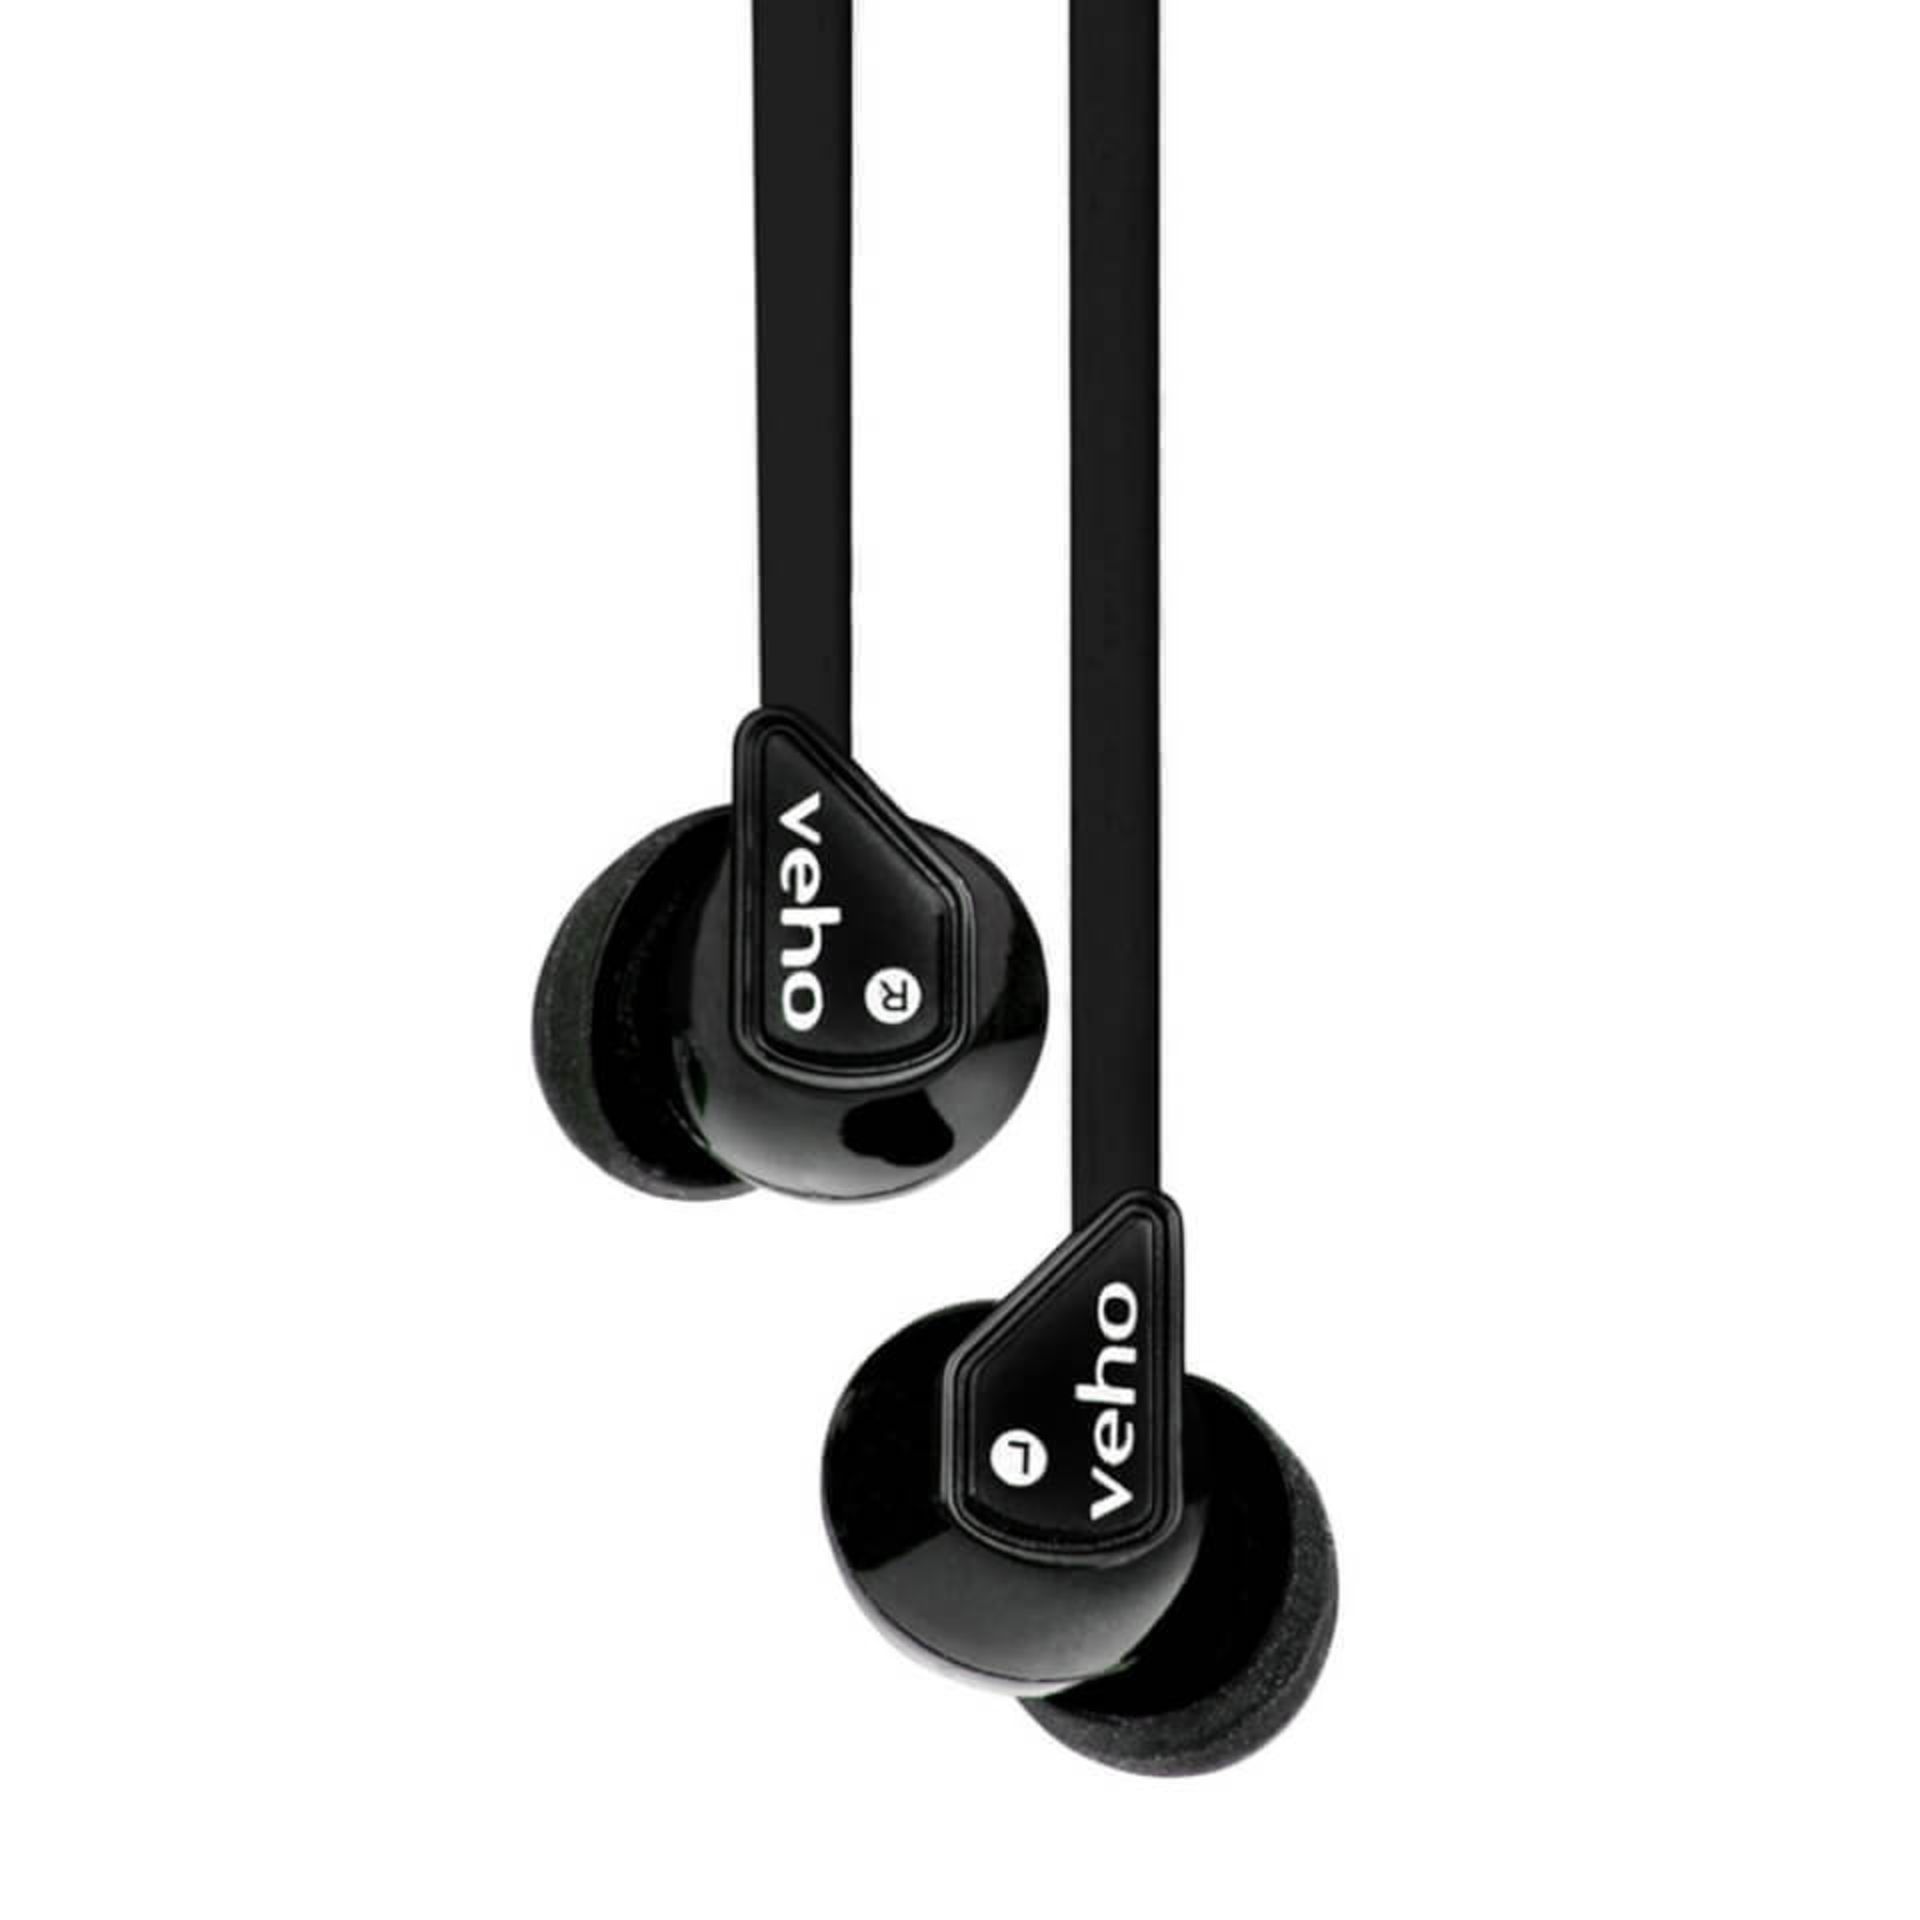 V Brand New Veho Z-1 Noise Isolating Stereo Earbuds - Black - Online Price £19.95